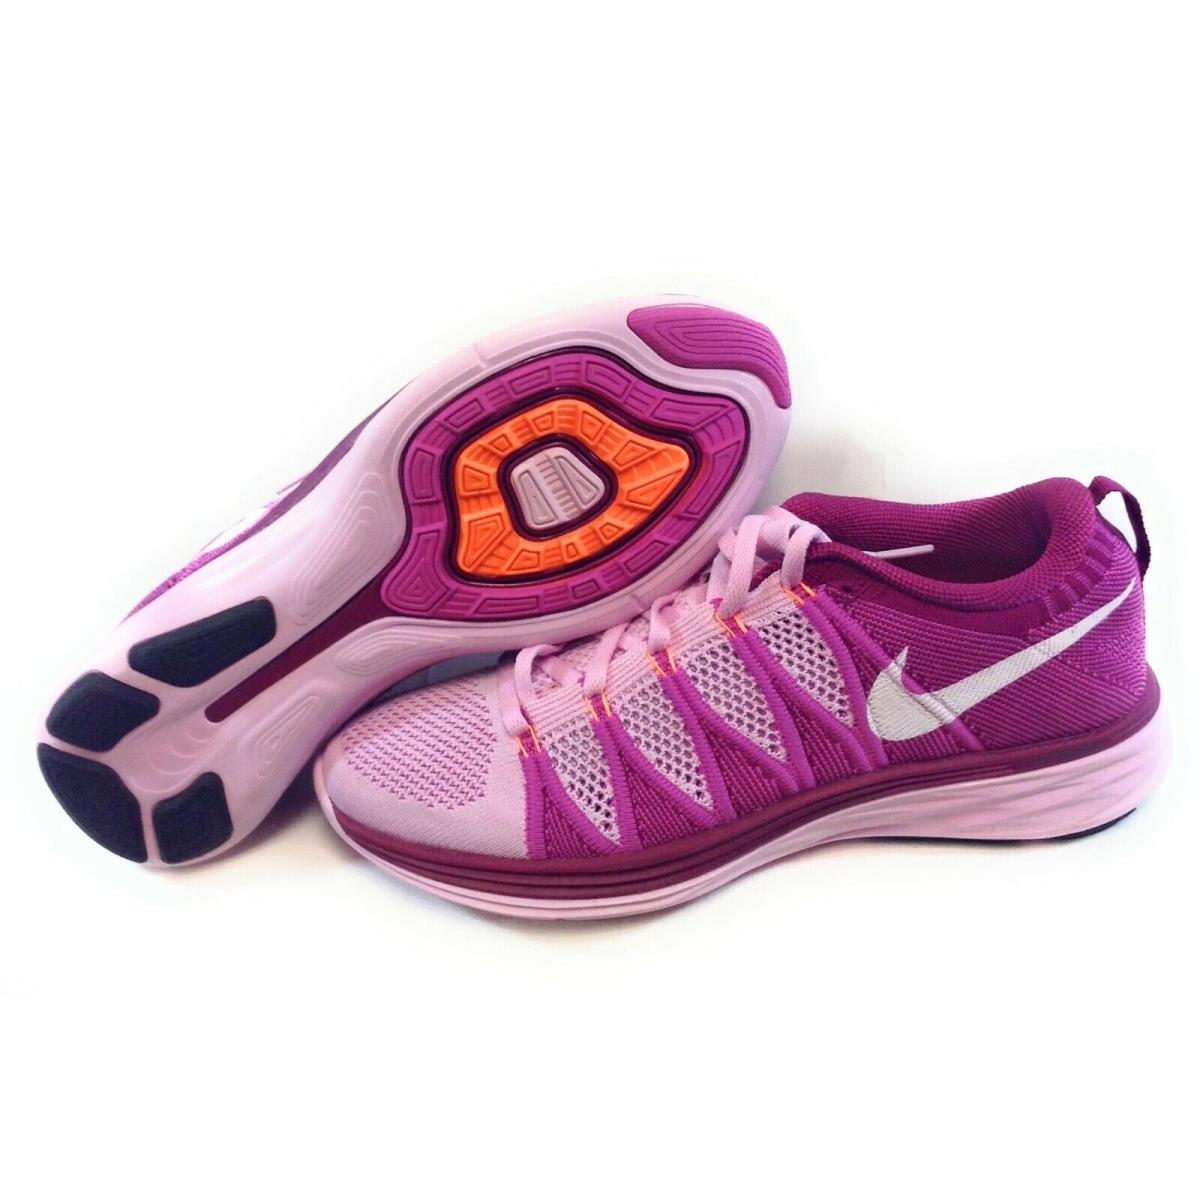 Womens Nike Flyknit Lunar2 620658 615 Pink Purple 2013 Deadstock Sneakers Shoes - Pink